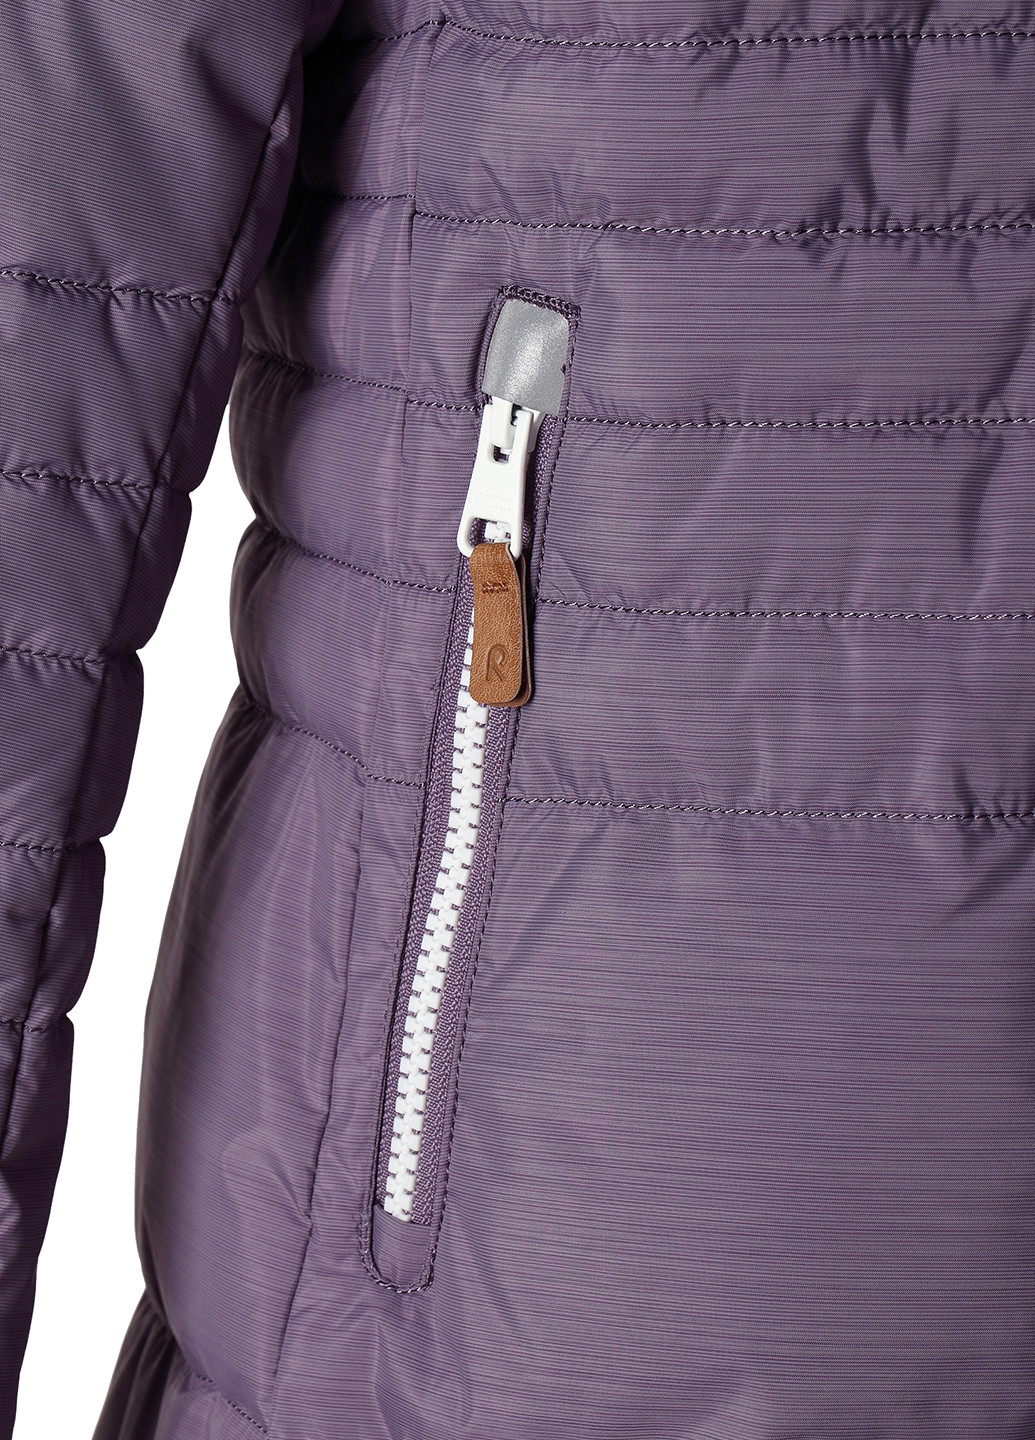 Бледно-фиолетовая зимняя куртка Reima